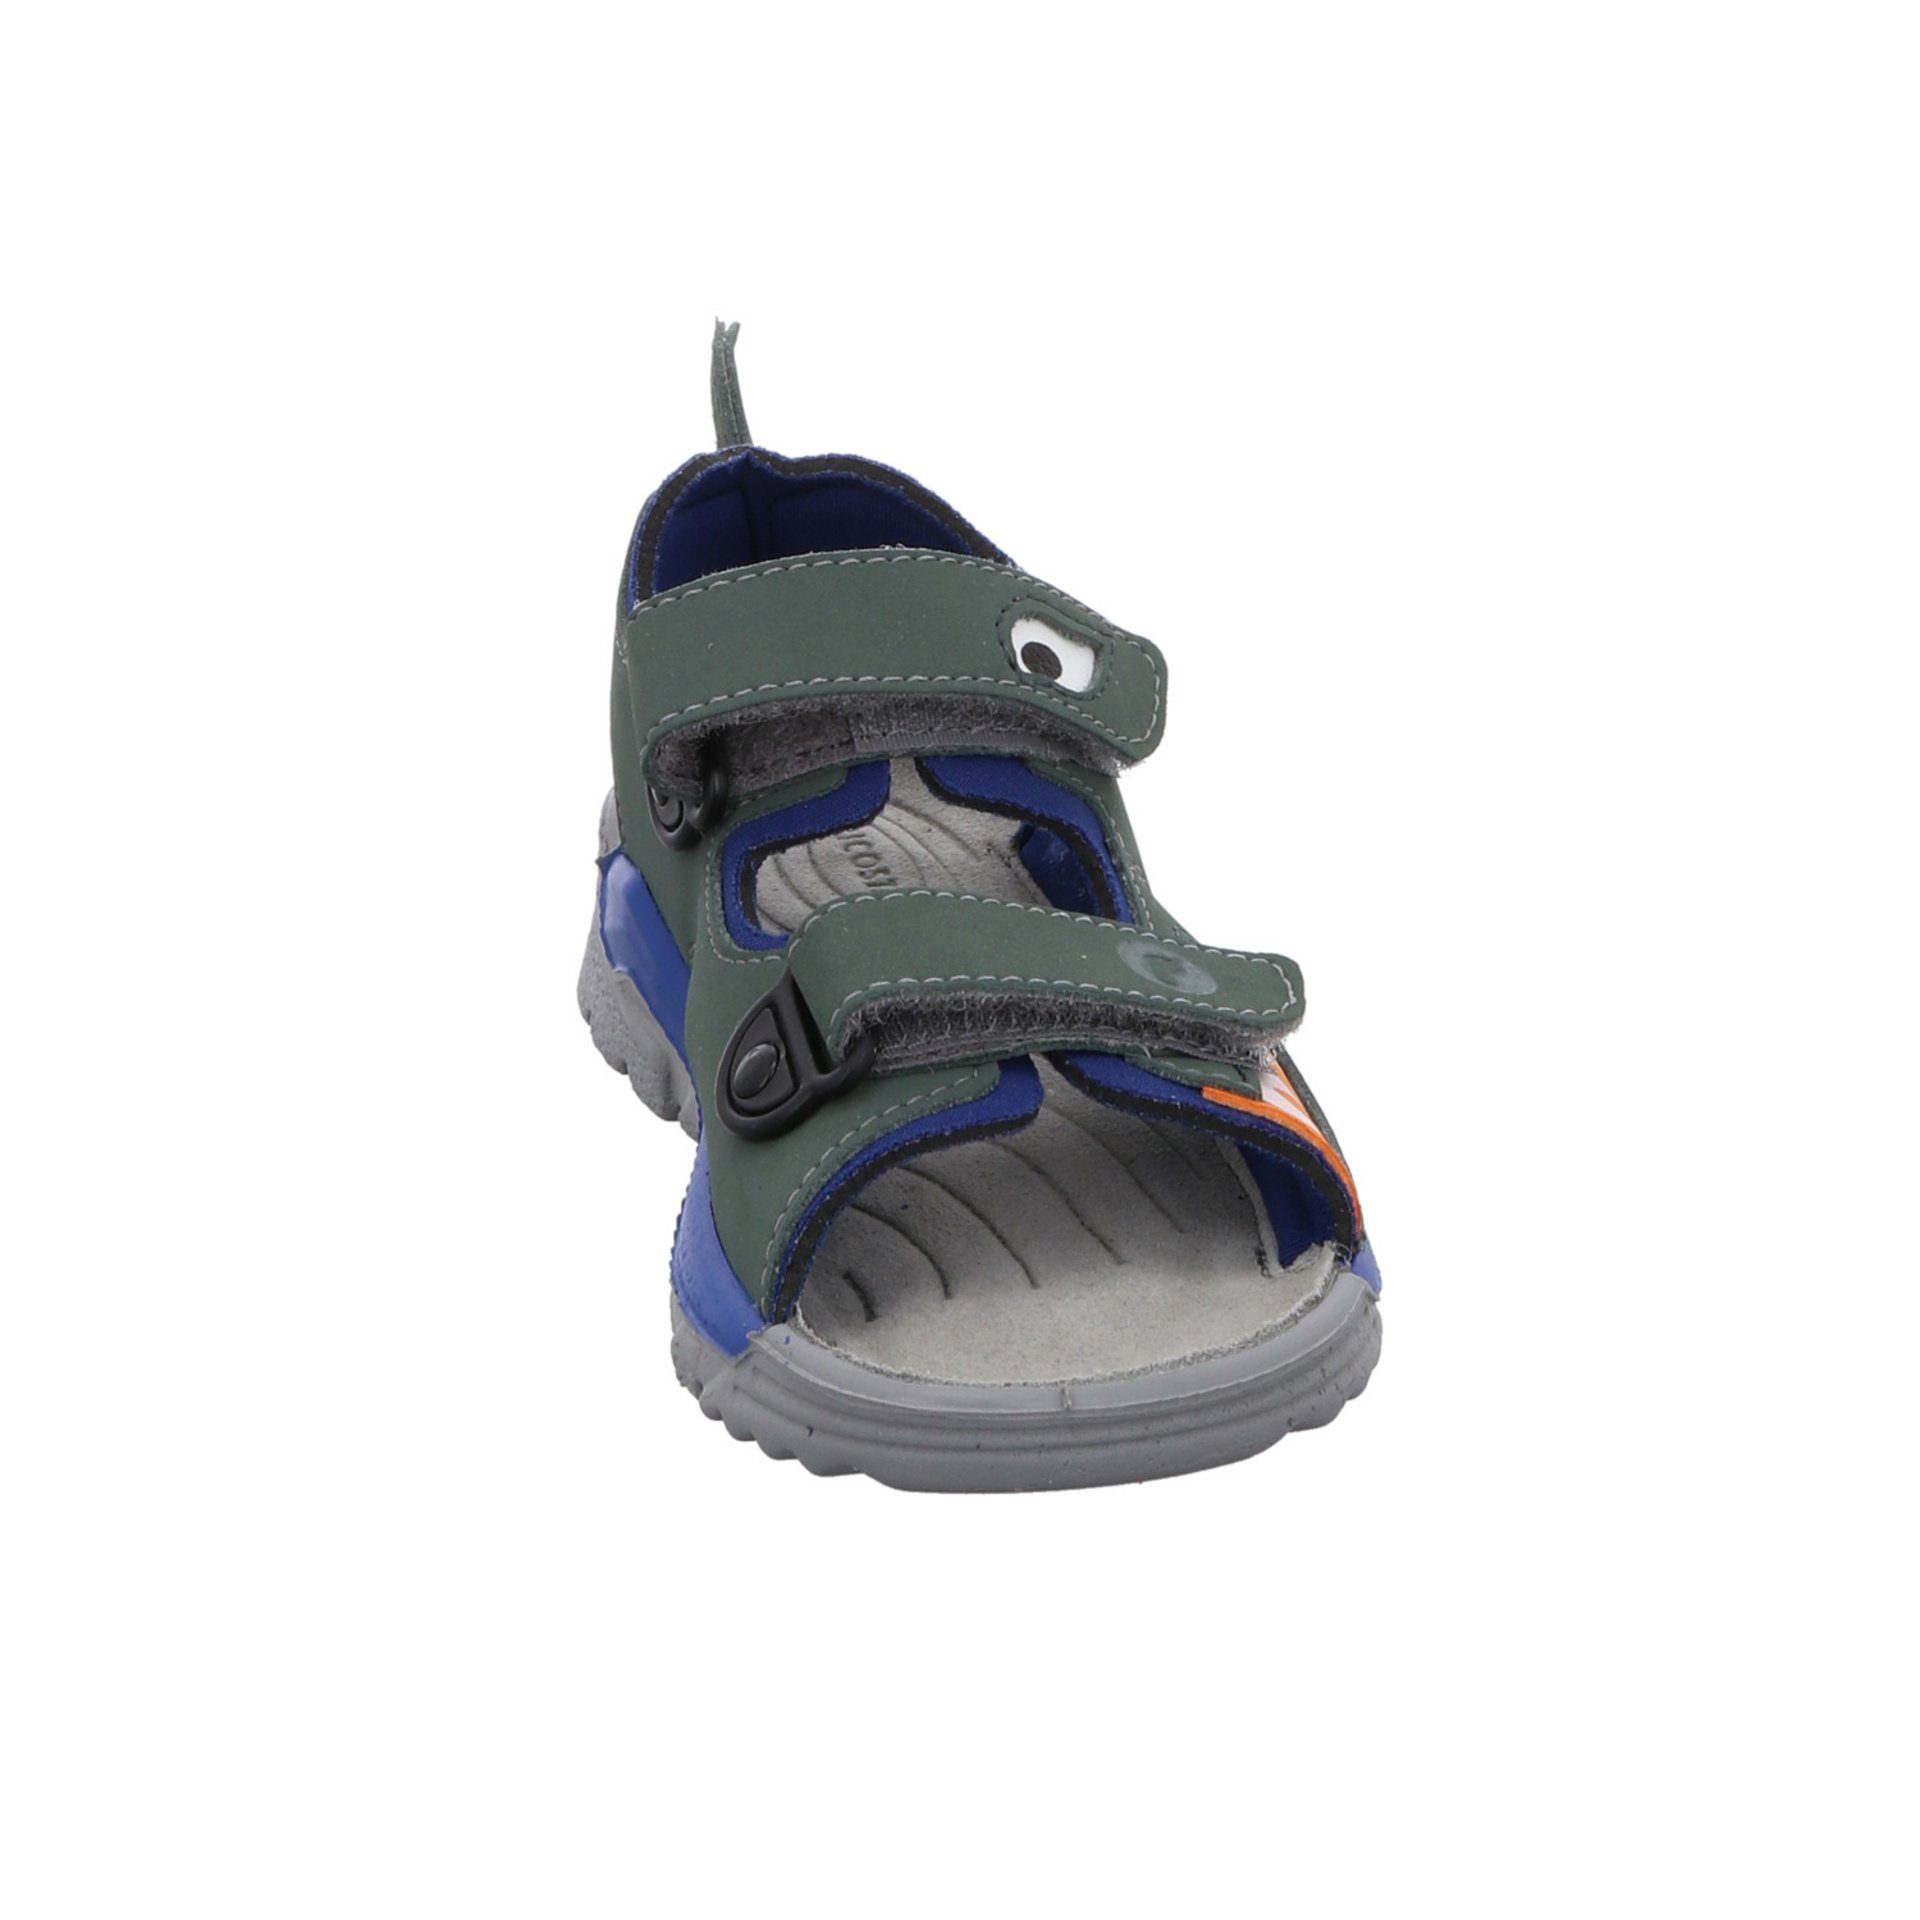 Textil Jungen Sandale Kinderschuhe grün Schuhe Shark Sandalen Ricosta Sandale